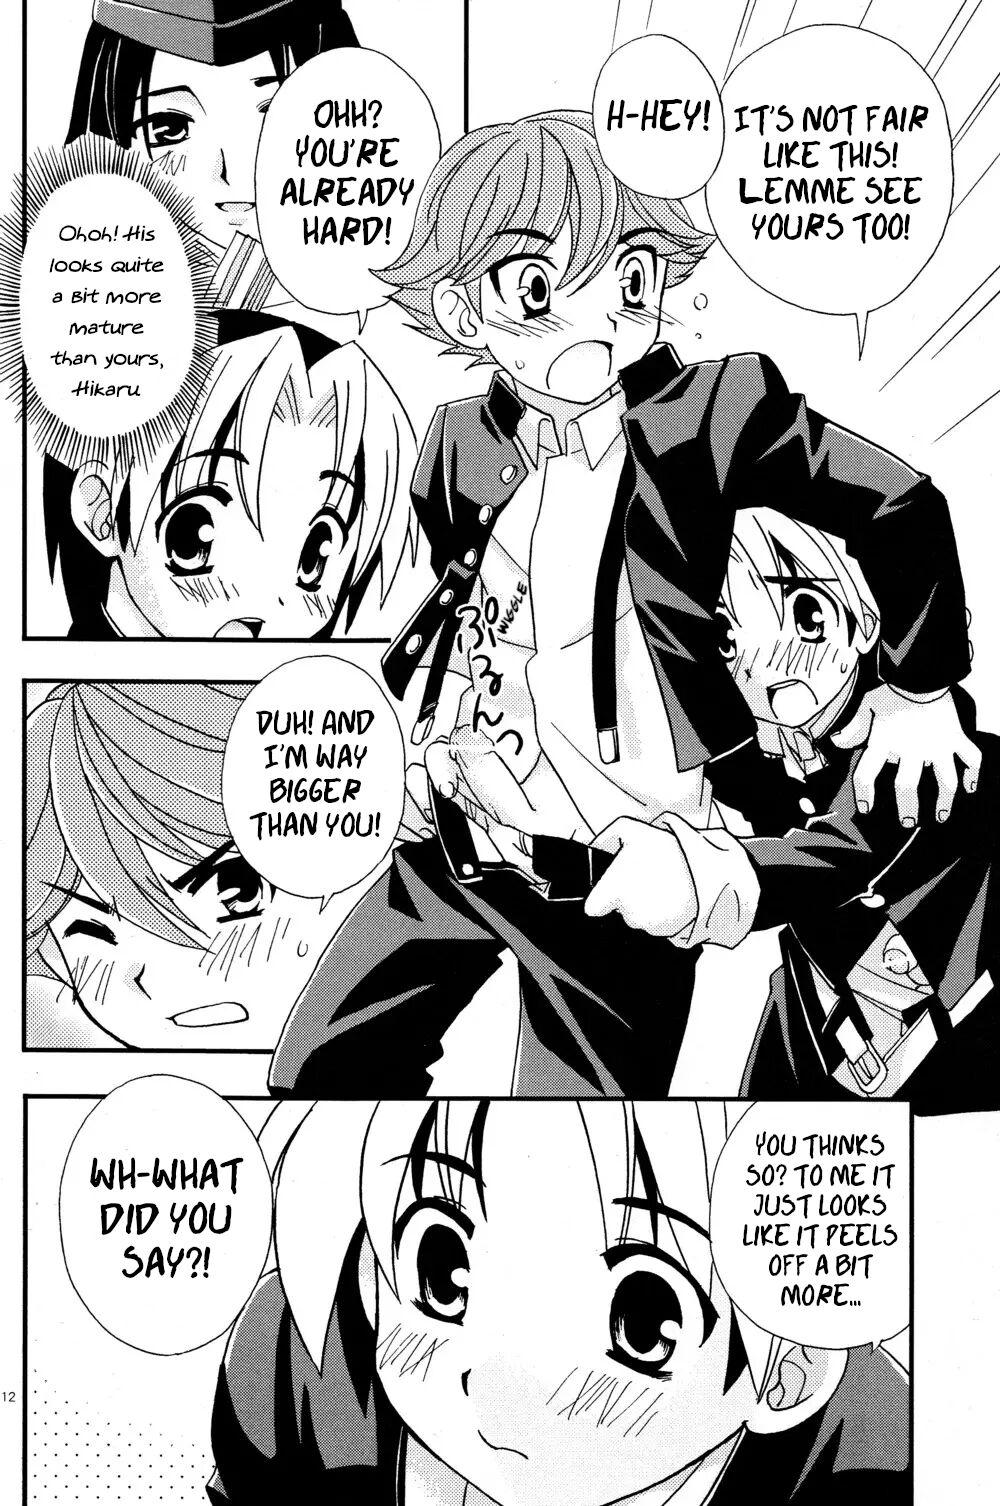 Teens Douki no Sakura - Hikaru no go Thylinh - Page 12